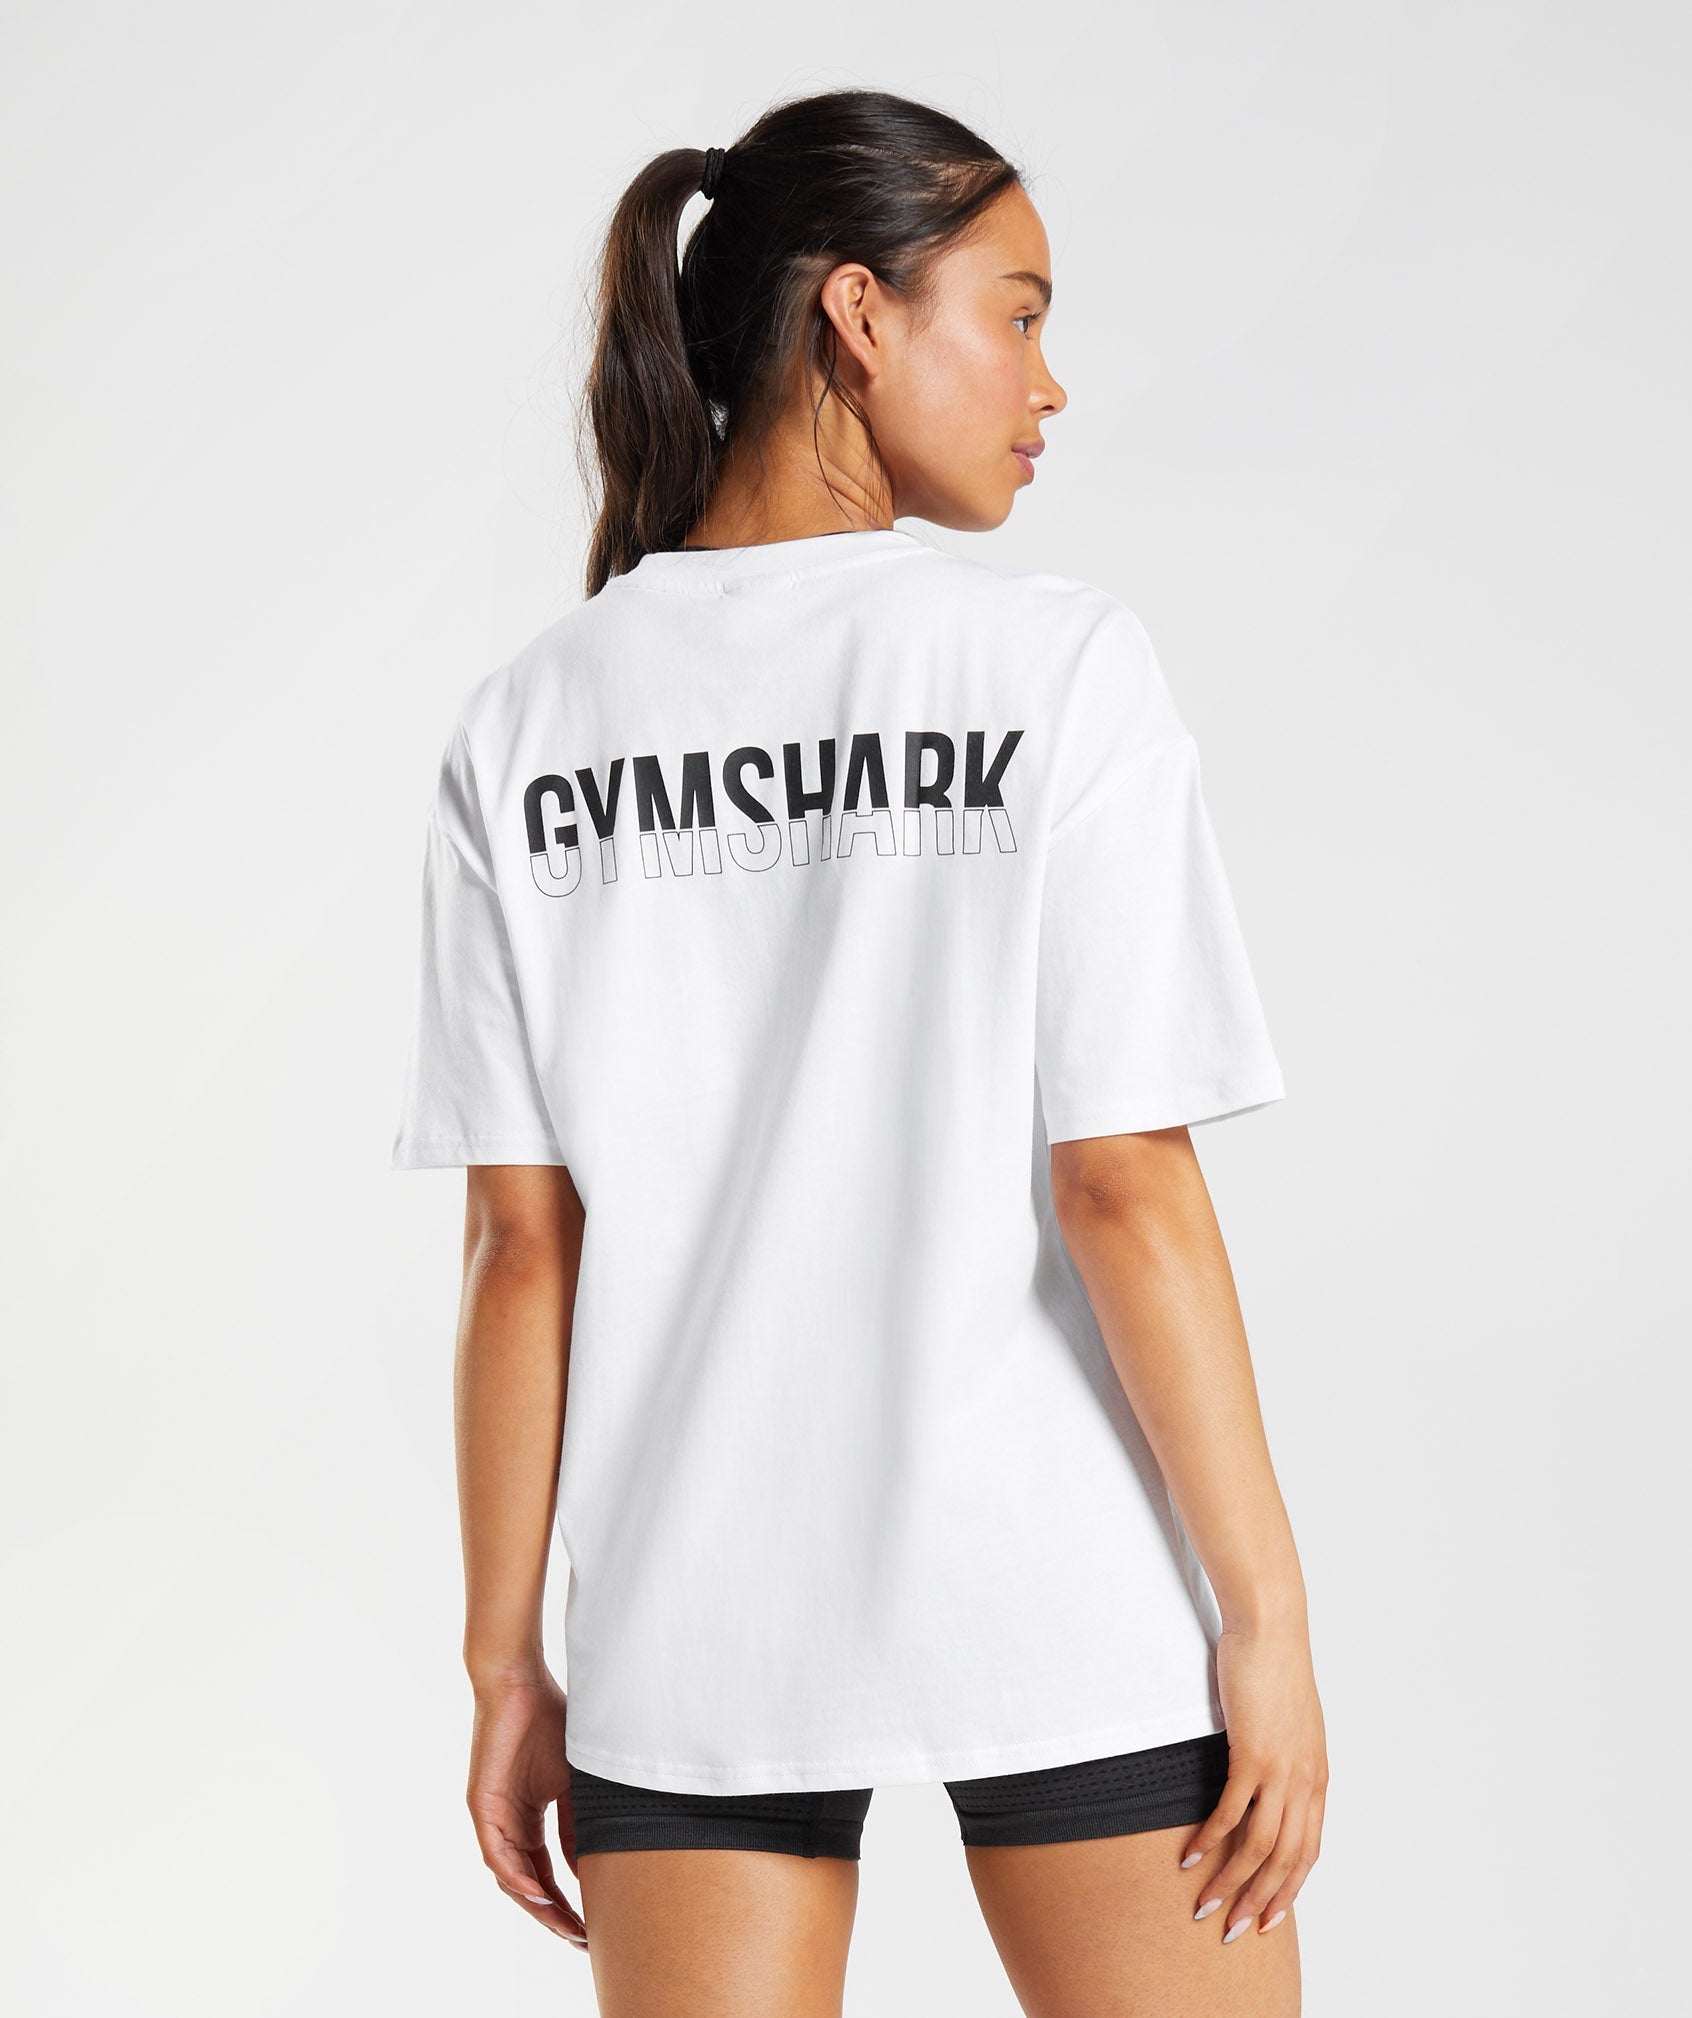 Gymshark Gymshark//Steve Cook Mesh Shorts - Black